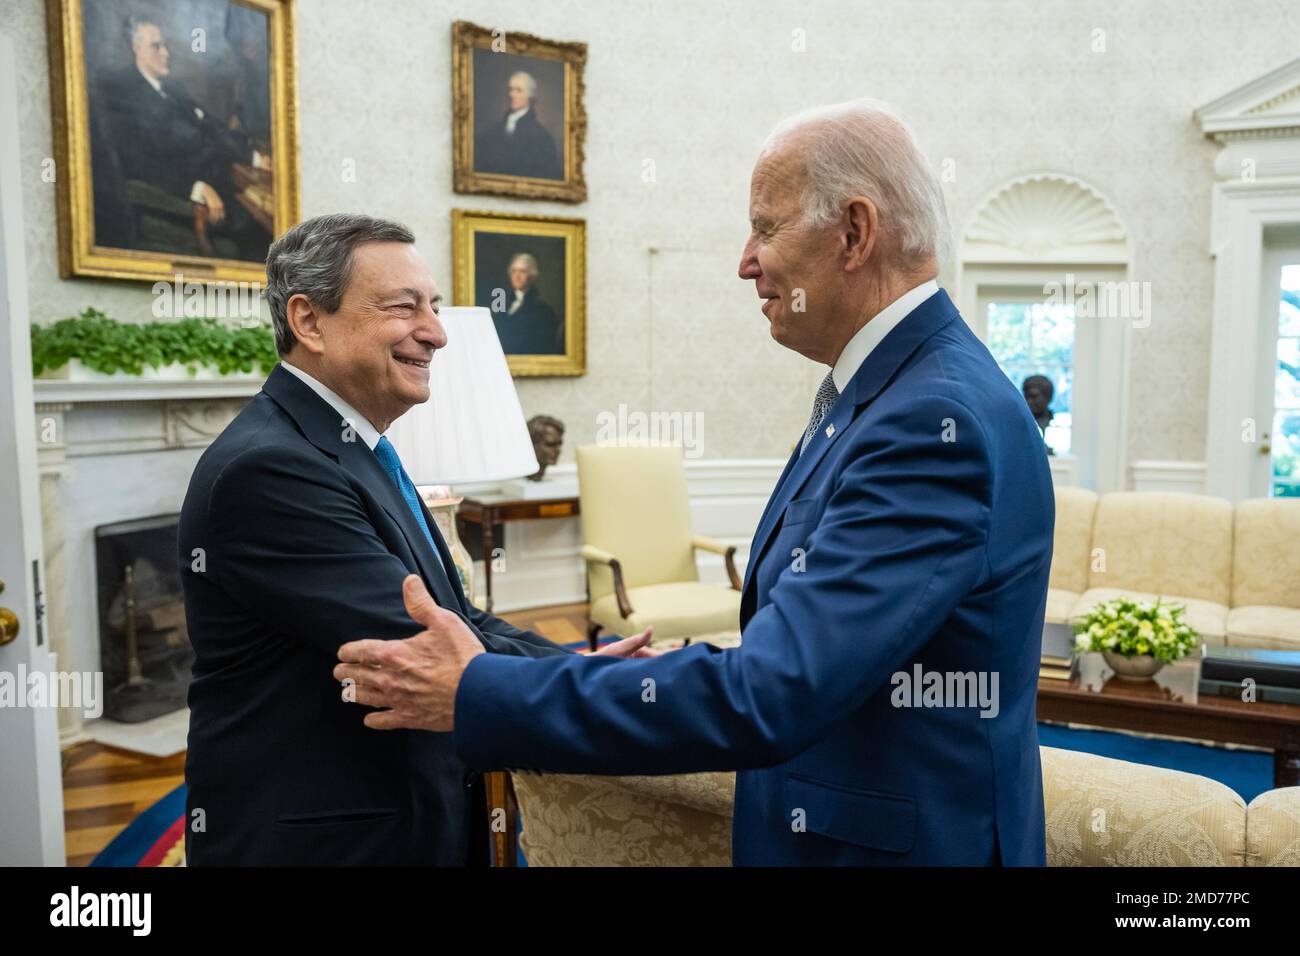 Reportage: Le président Joe Biden salue le Premier ministre italien Mario Draghi, mardi, 10 mai 2022, dans le Bureau ovale Banque D'Images